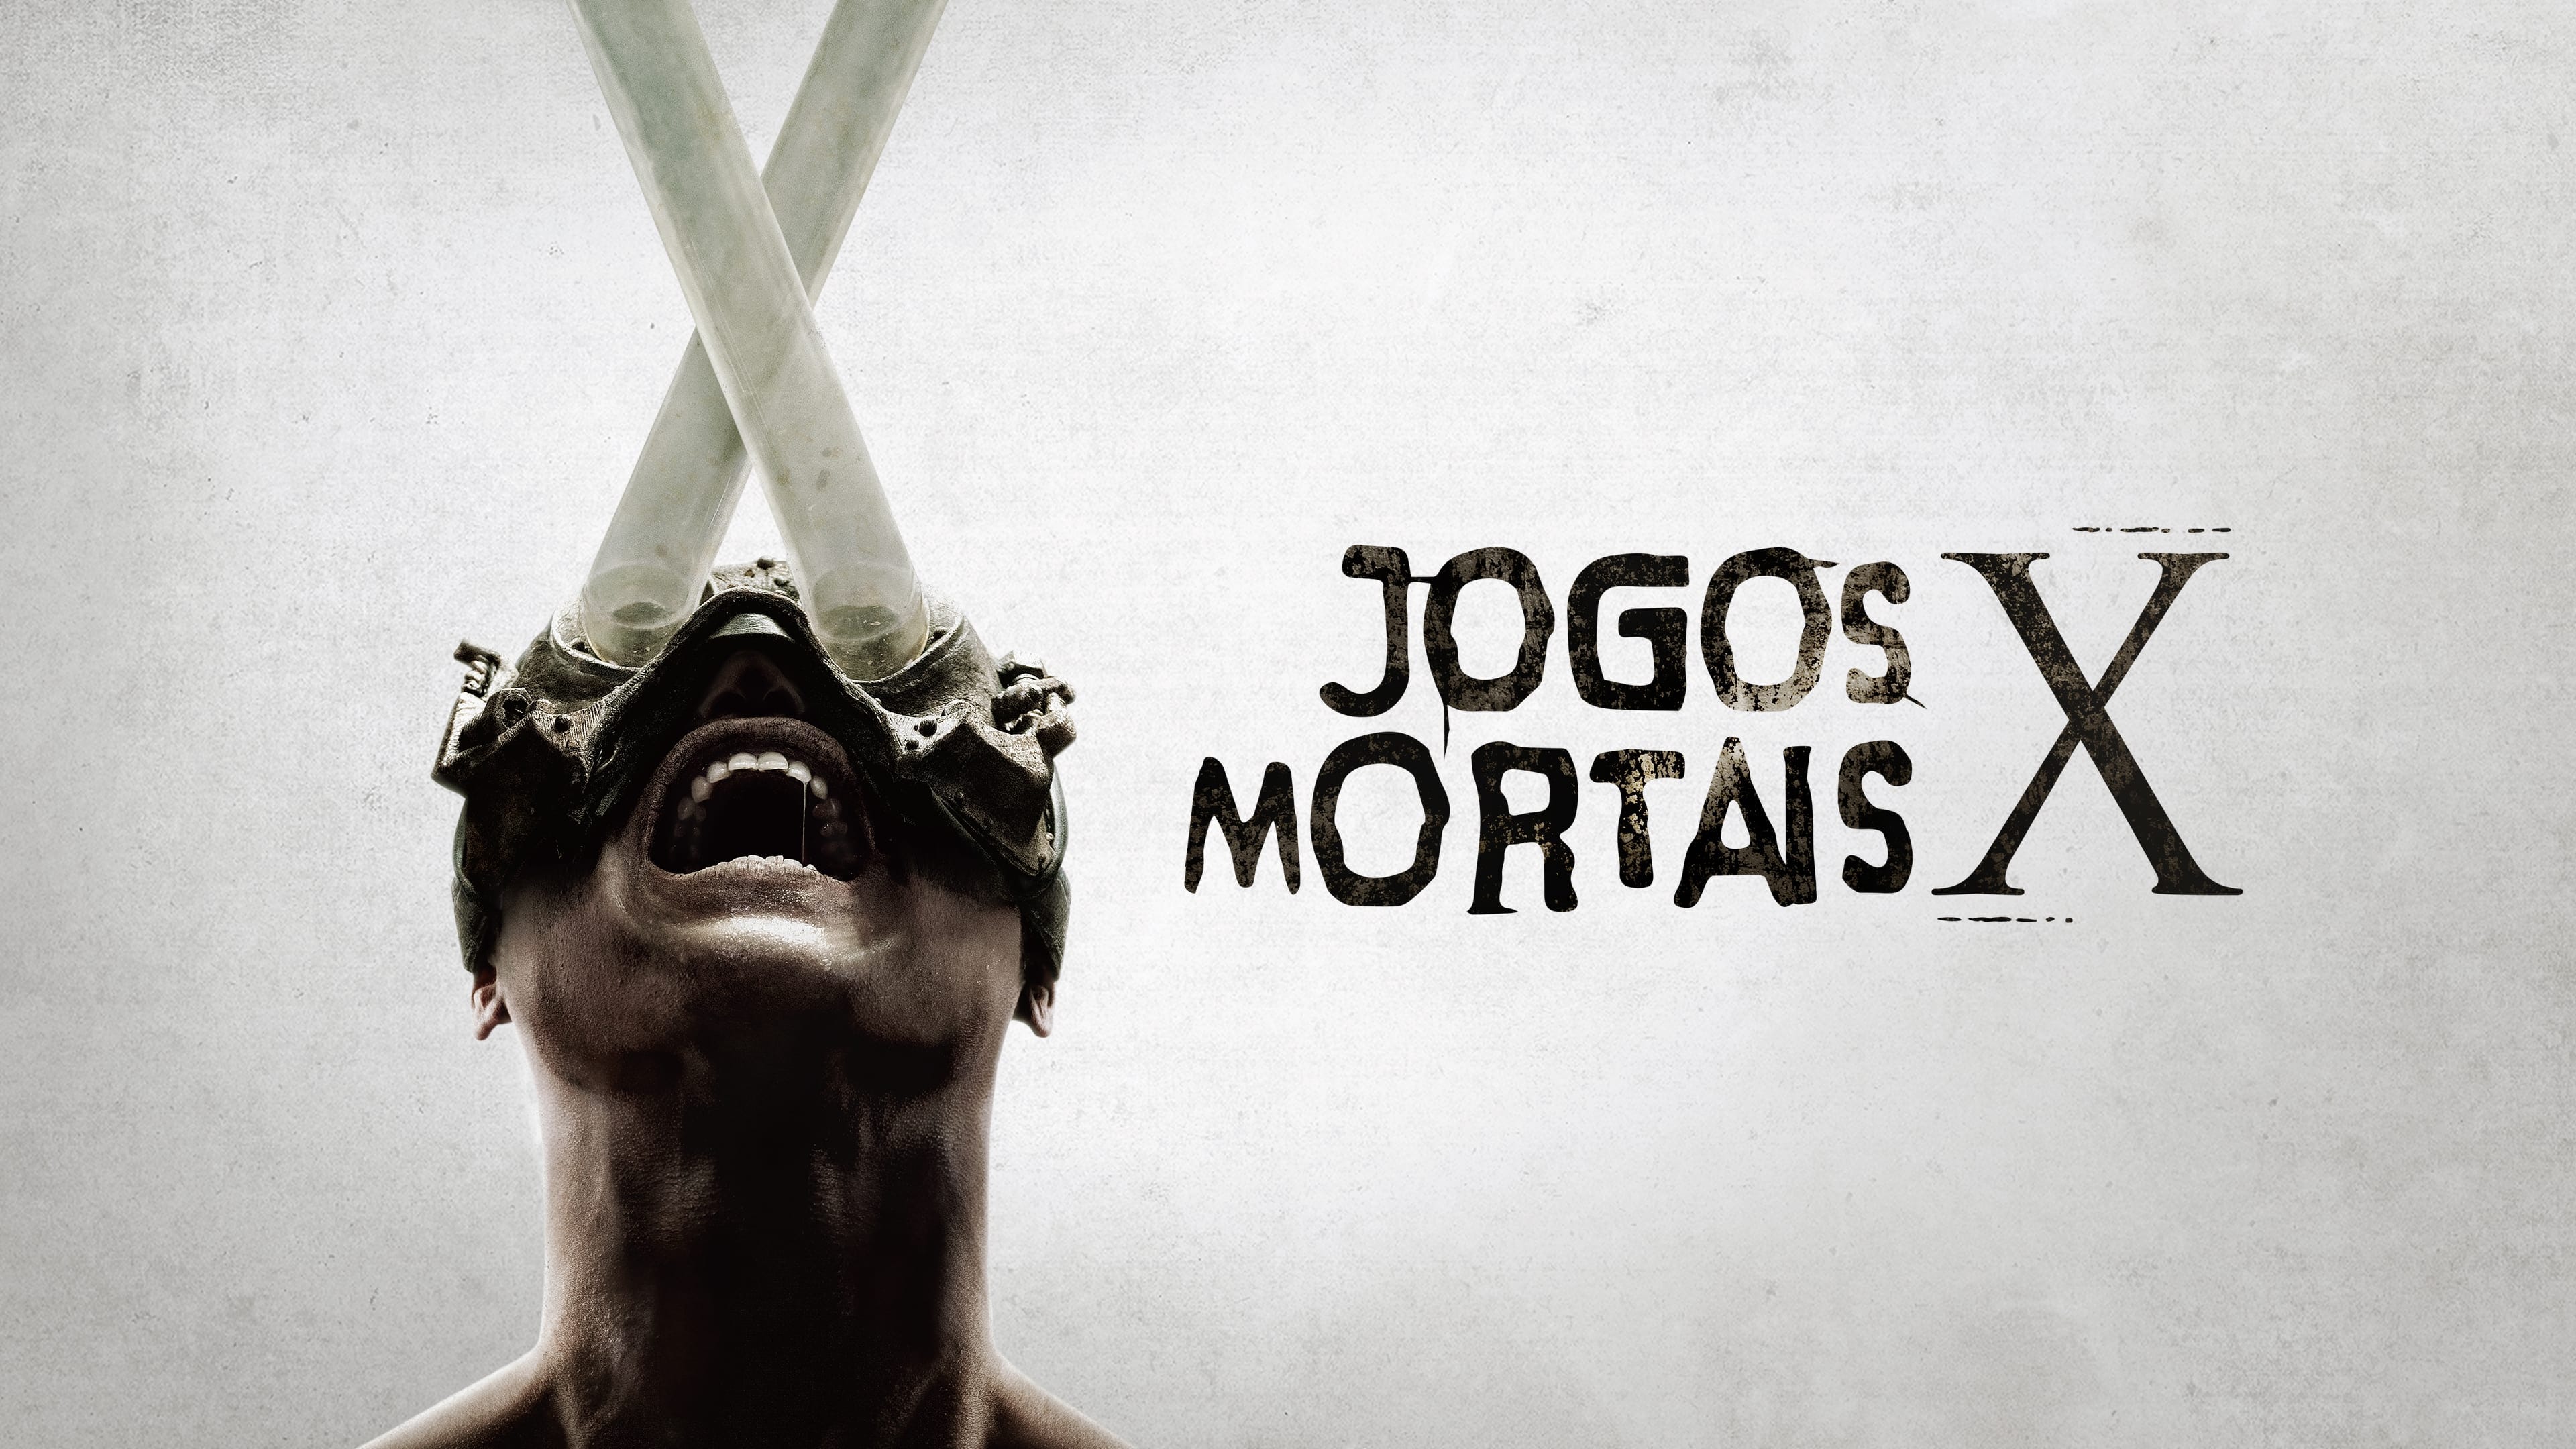 Jogos Mortais VI' mantém violenta marca registrada - Rede Brasil Atual